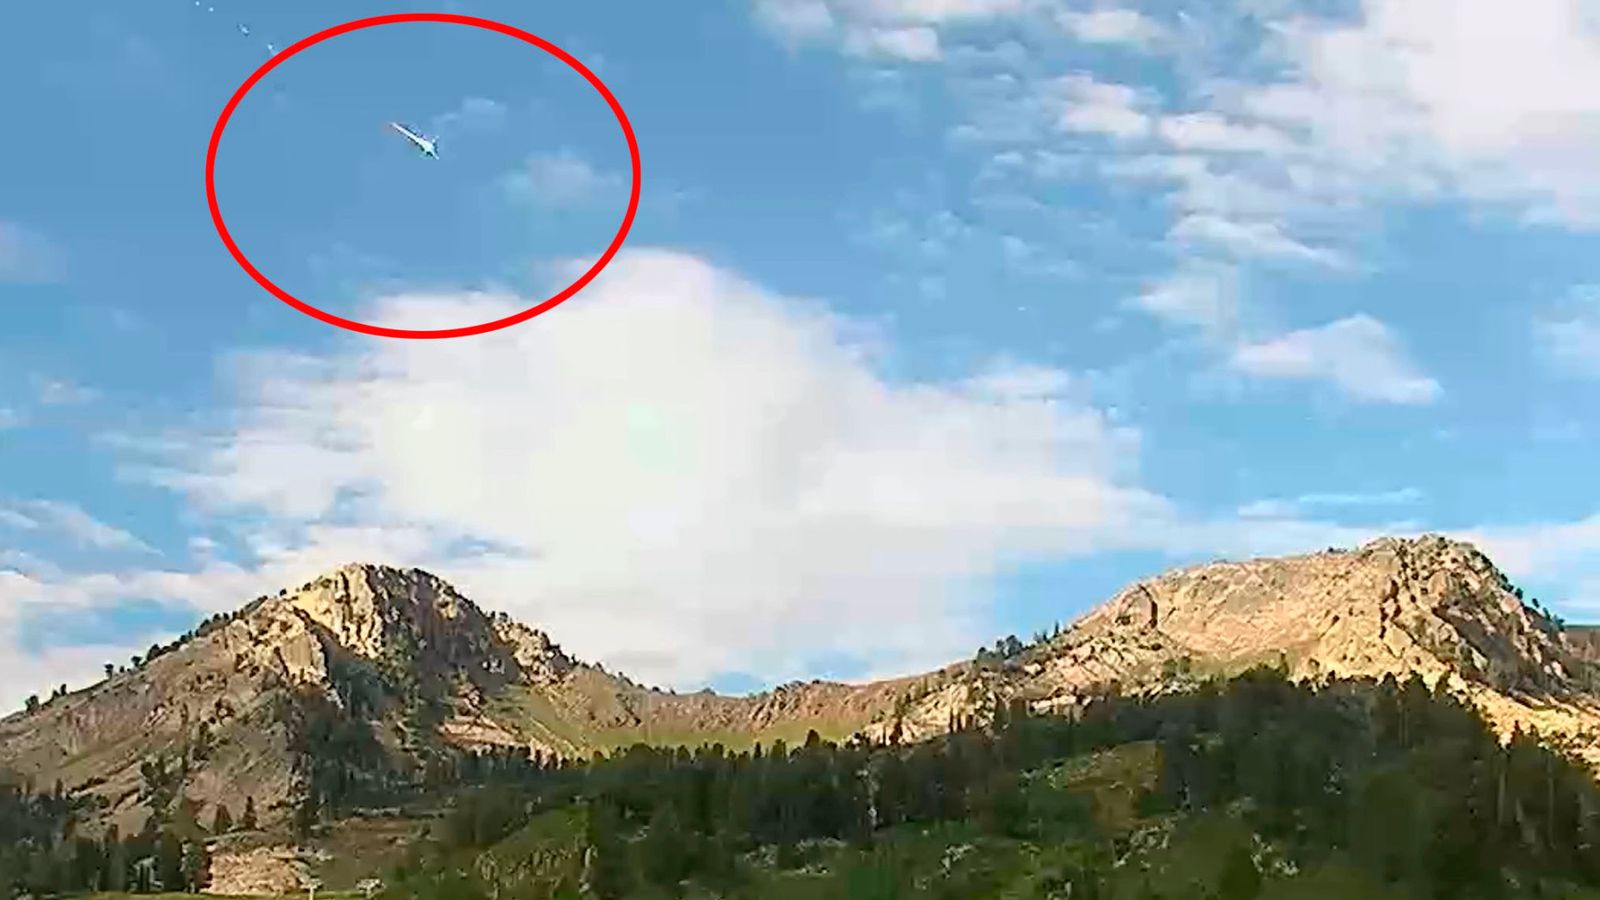 Sospetto meteorite rilevato sulle linee delle telecamere nel cielo sopra lo Utah |  Notizie dagli Stati Uniti